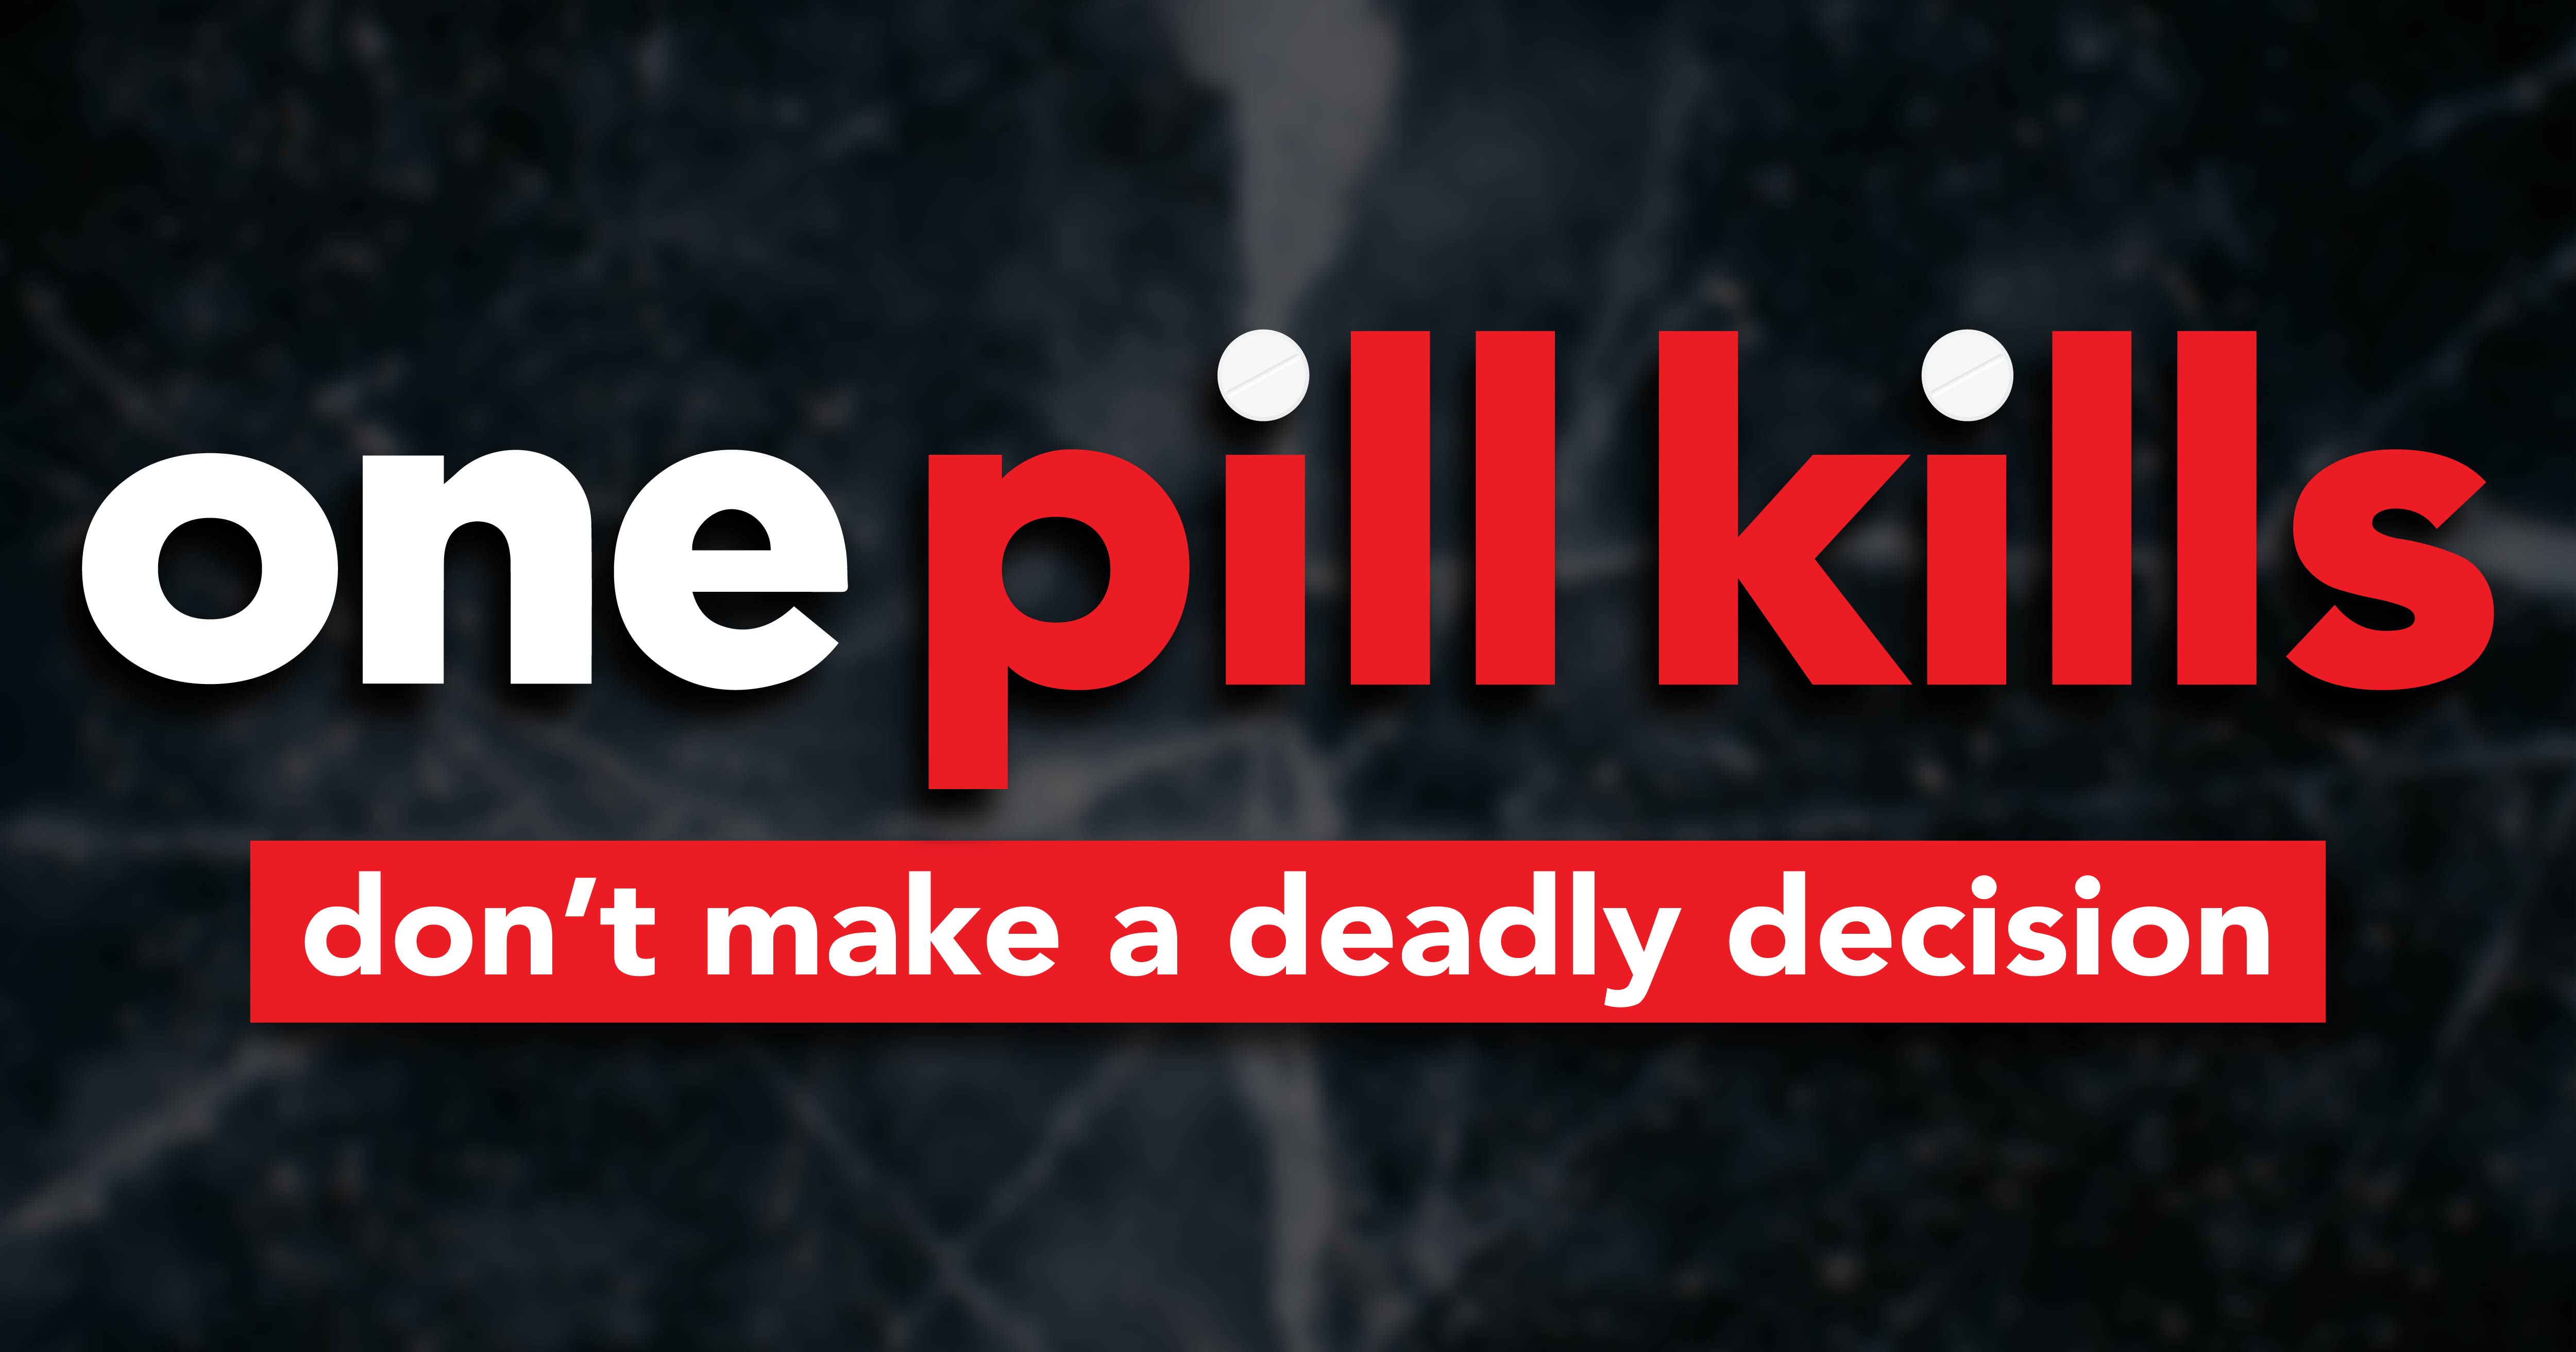 One pill kills